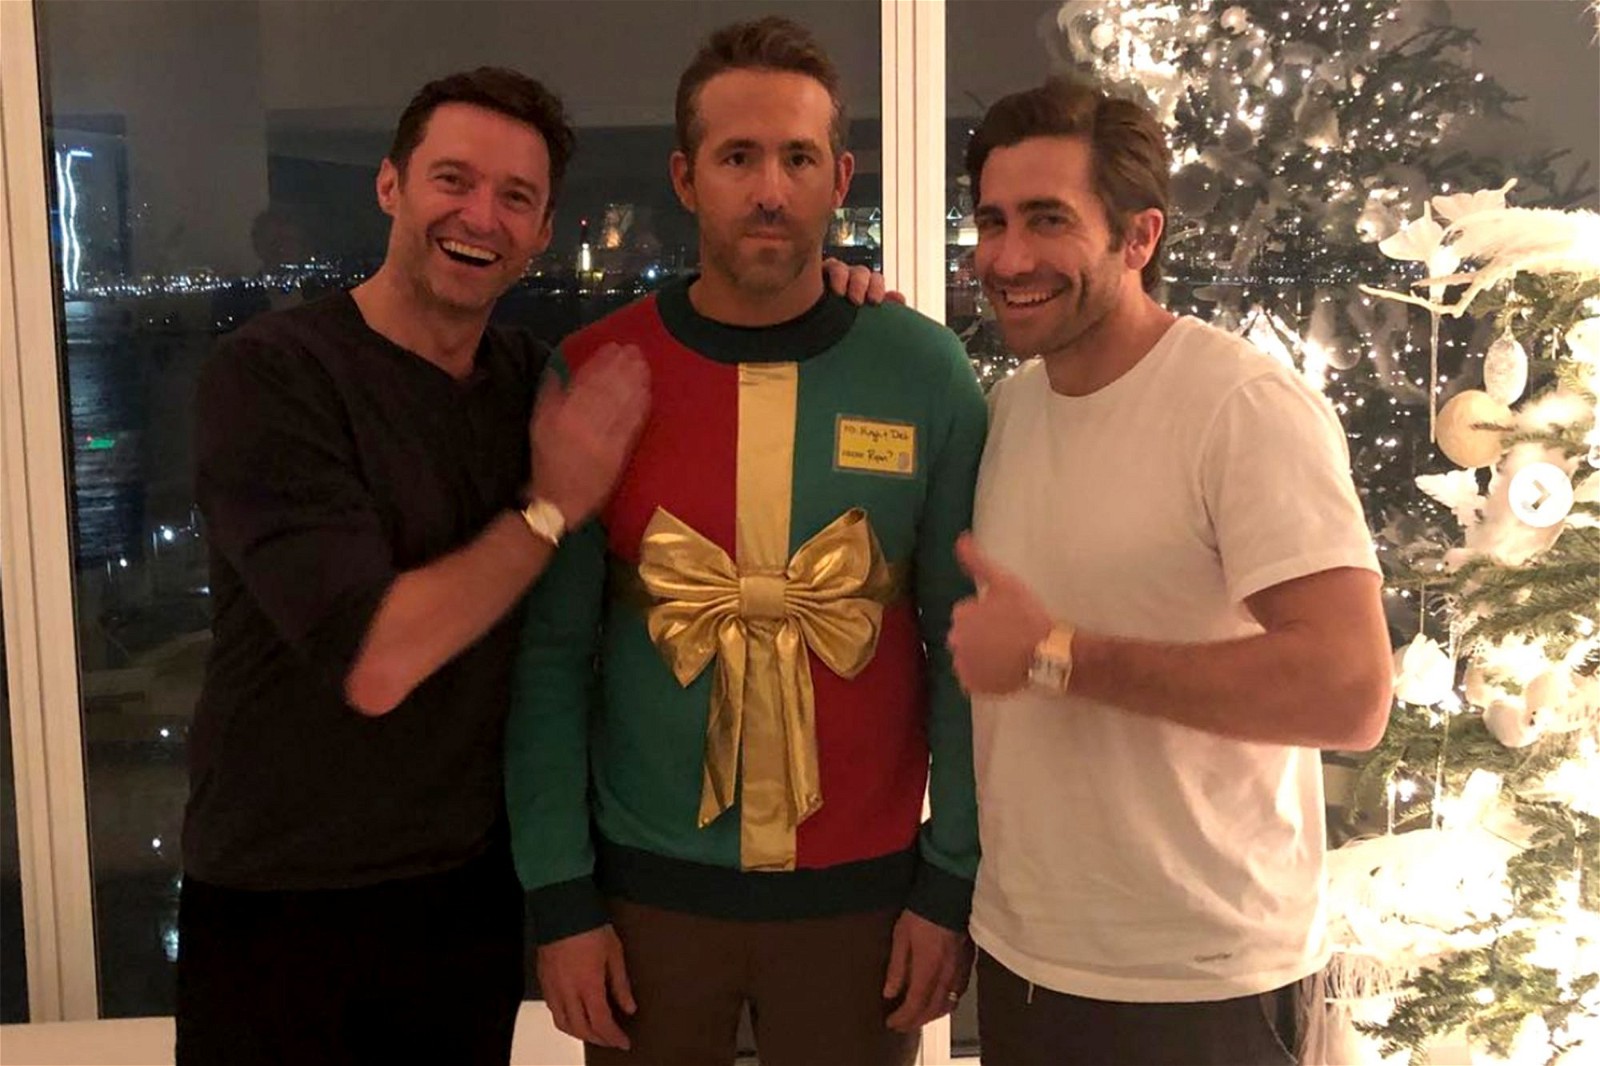 The iconic Ryan Reynolds and Hugh Jackman image.